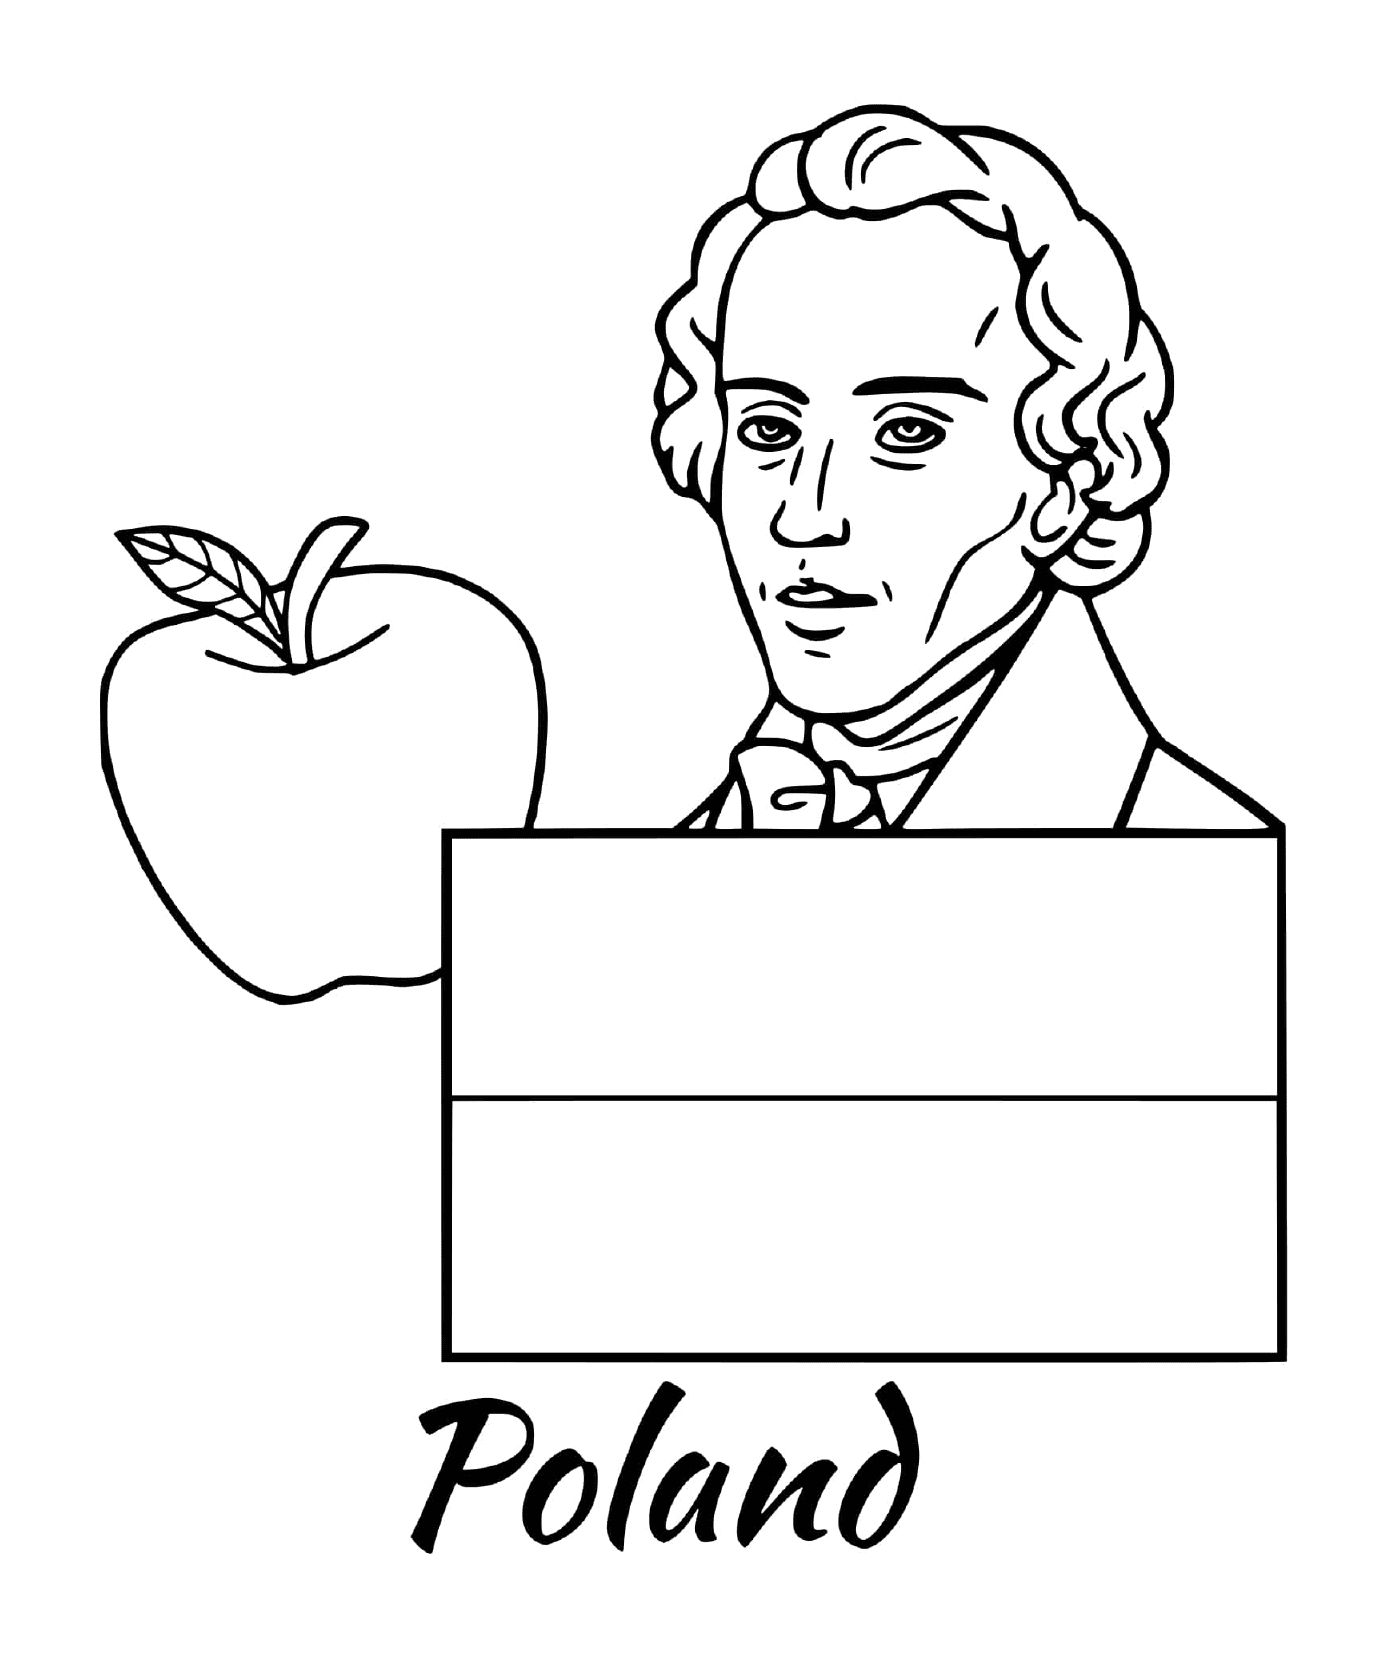  波兰国旗,肖邦 